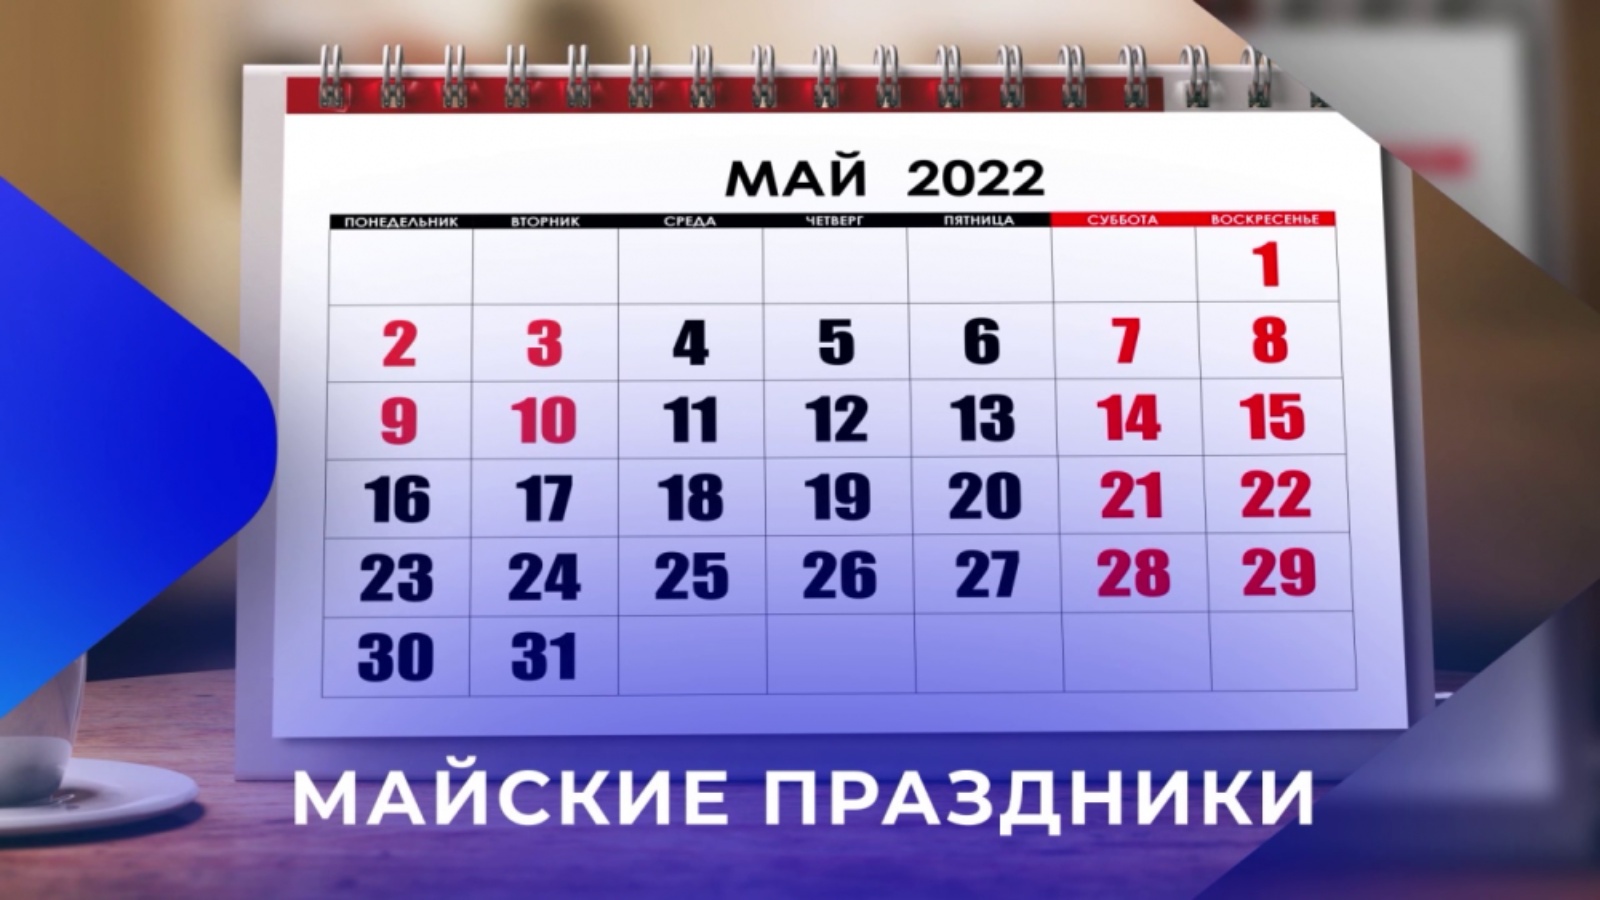 Выходные дни в мае 2024 в казахстане. Праздники в мае. Рабочий график на майские праздники. Календарь майских праздников 2022. Выходные в мае 2022.